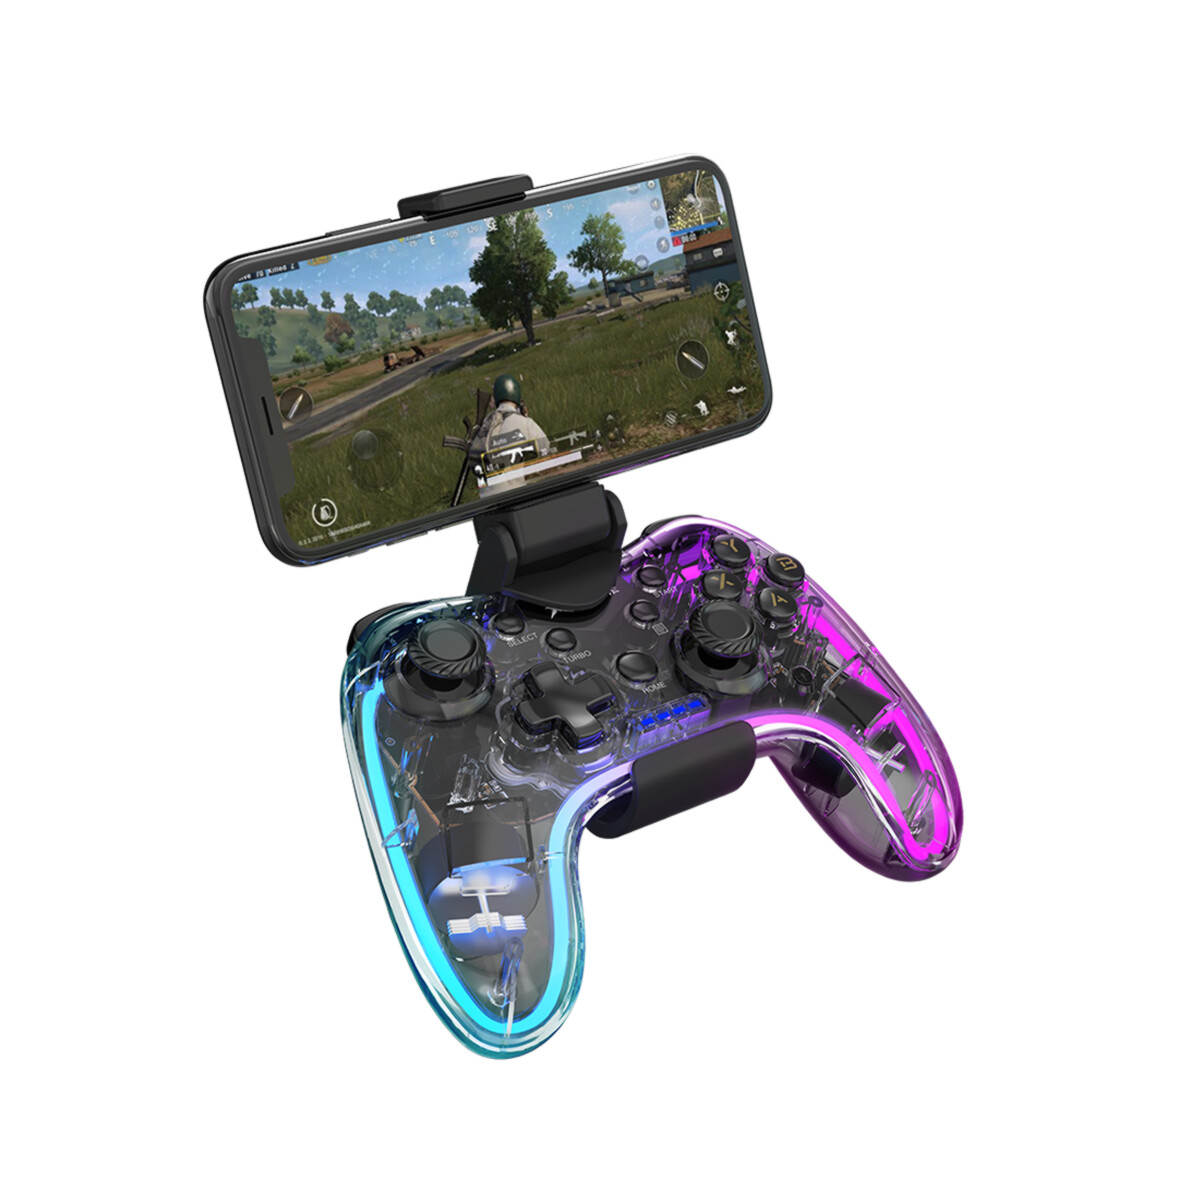 Joystick Para Playstation 4 / Playstation 3 / Nintendo Switch / XBOX / Celulares Android Y iOS Con Soporte 